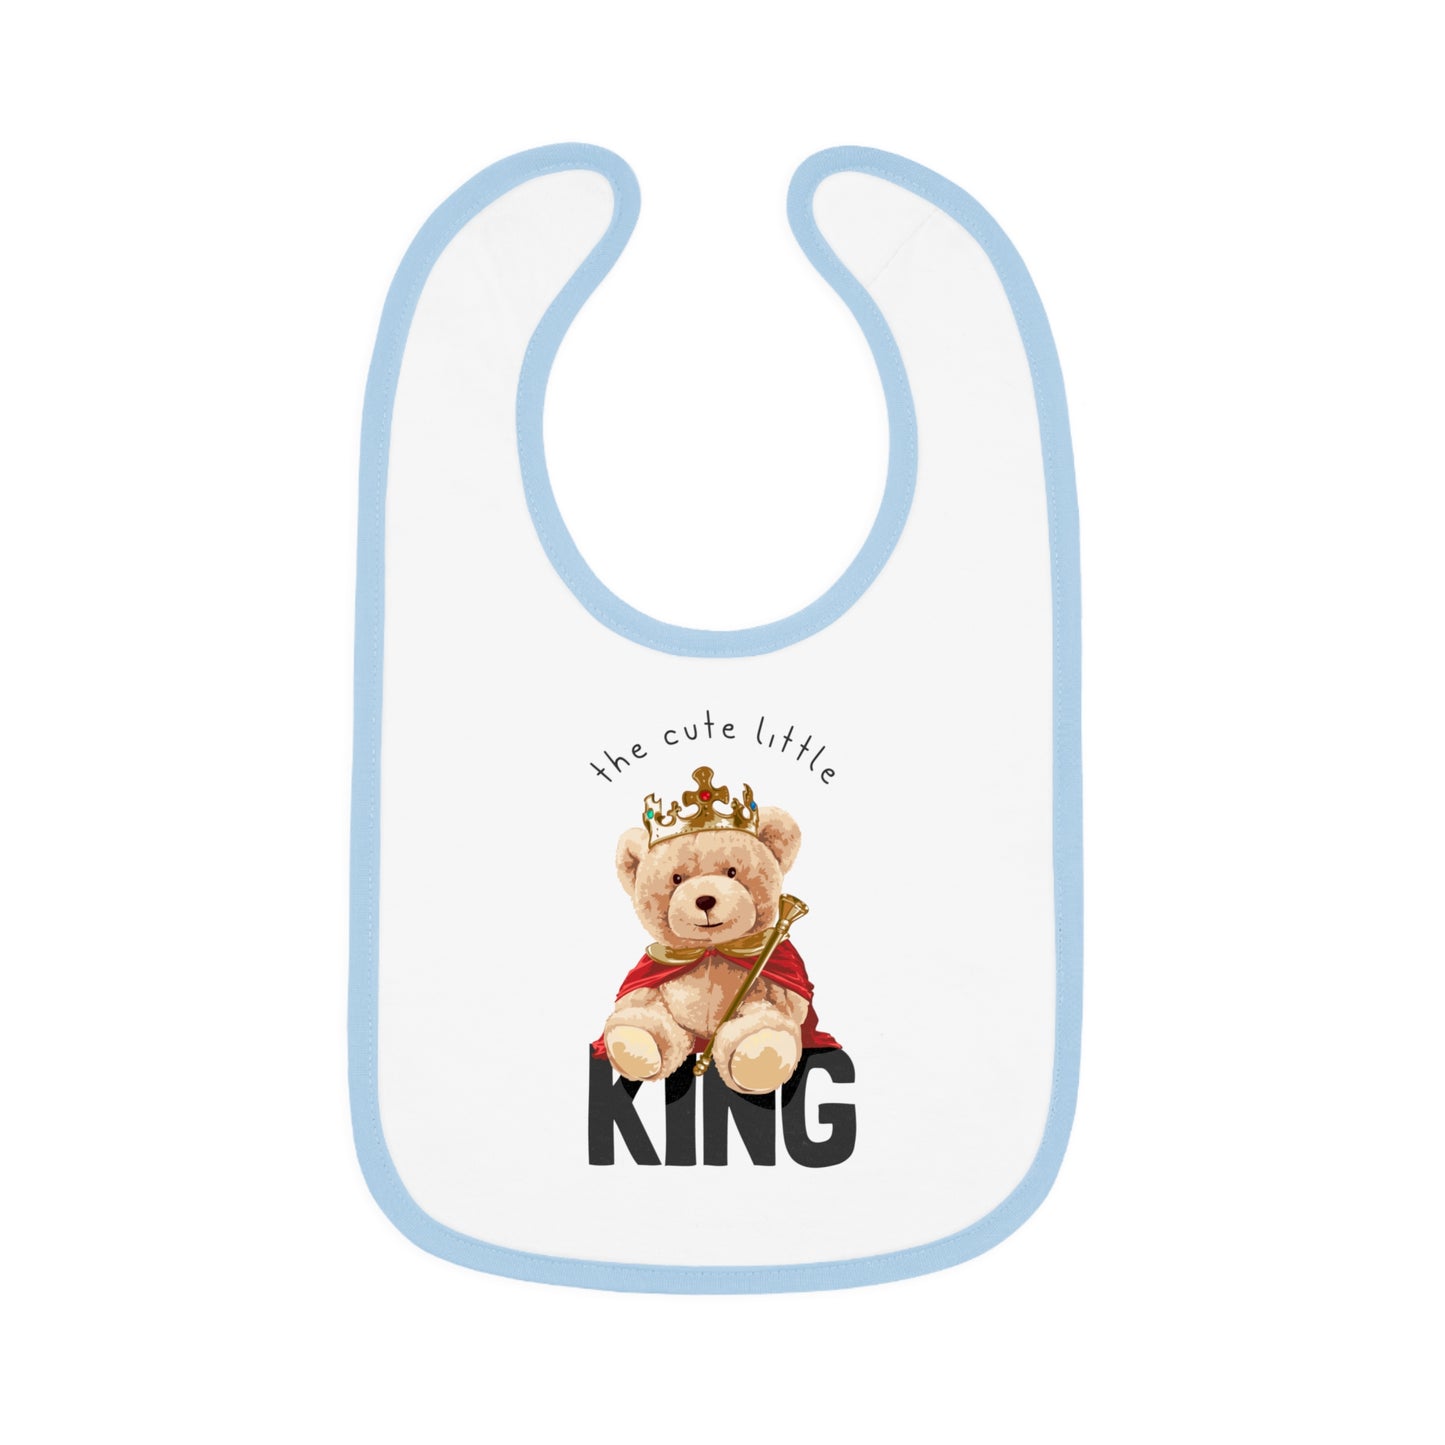 Cute Little King - Baby Contrast Trim Jersey Bib